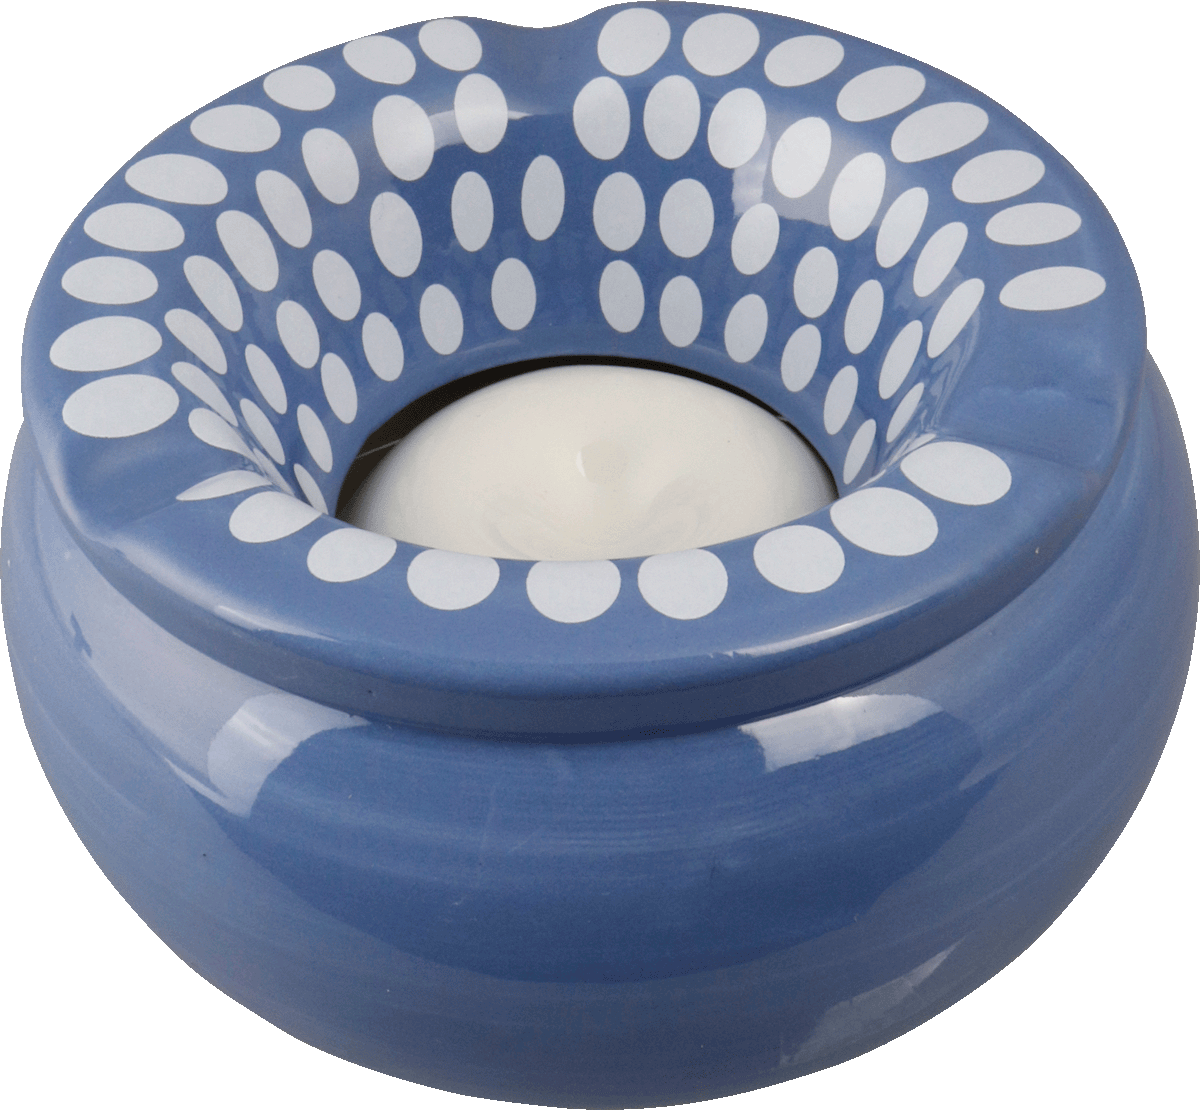 Windaschenbecher Keramik Dekor farbig sortiert 12cm für 5,95 €